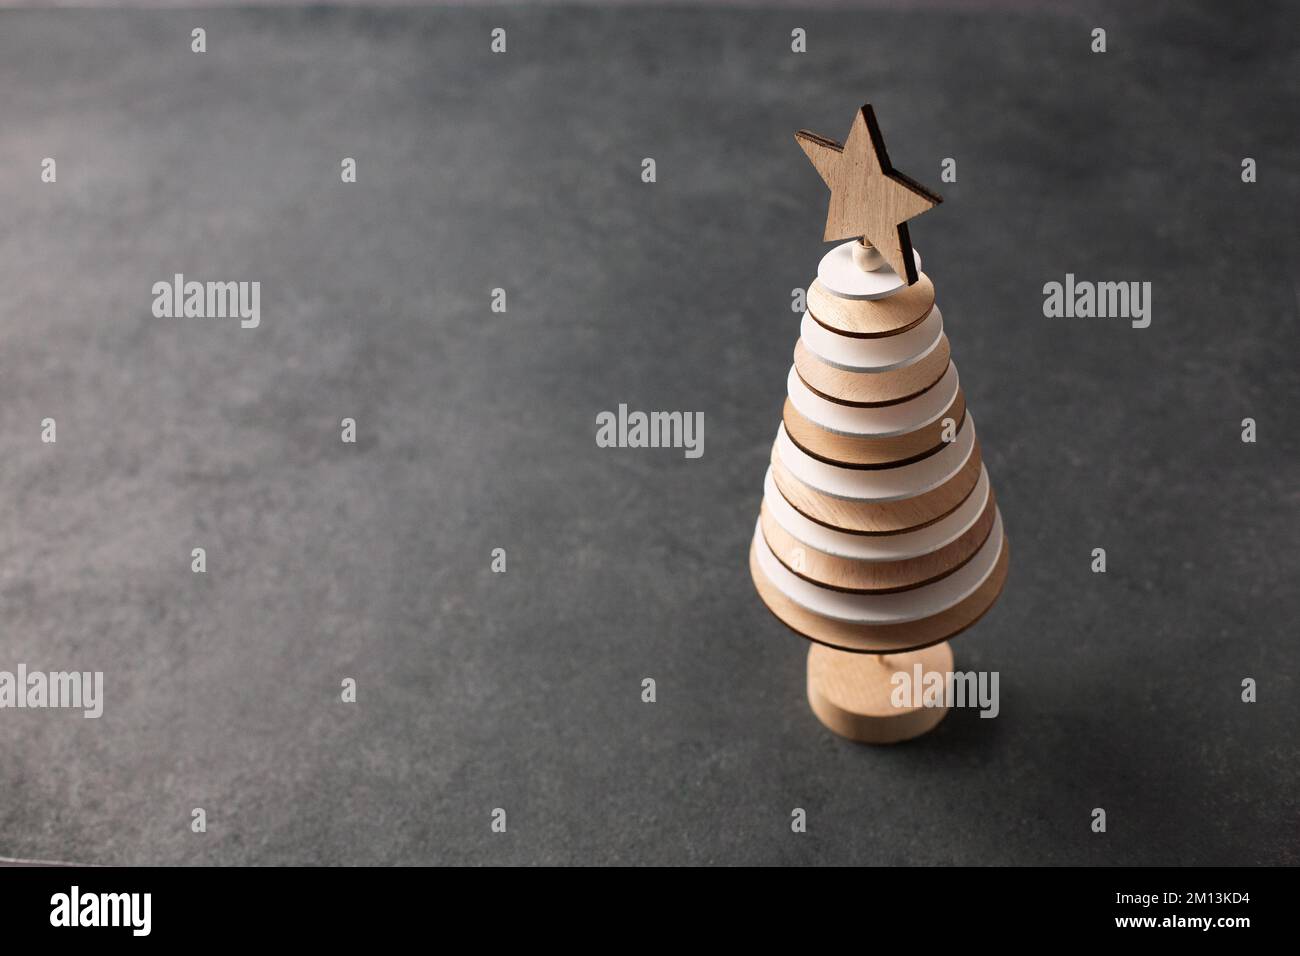 Albero di Natale creativo fatto da cerchi di legno su fondo scuro Foto Stock